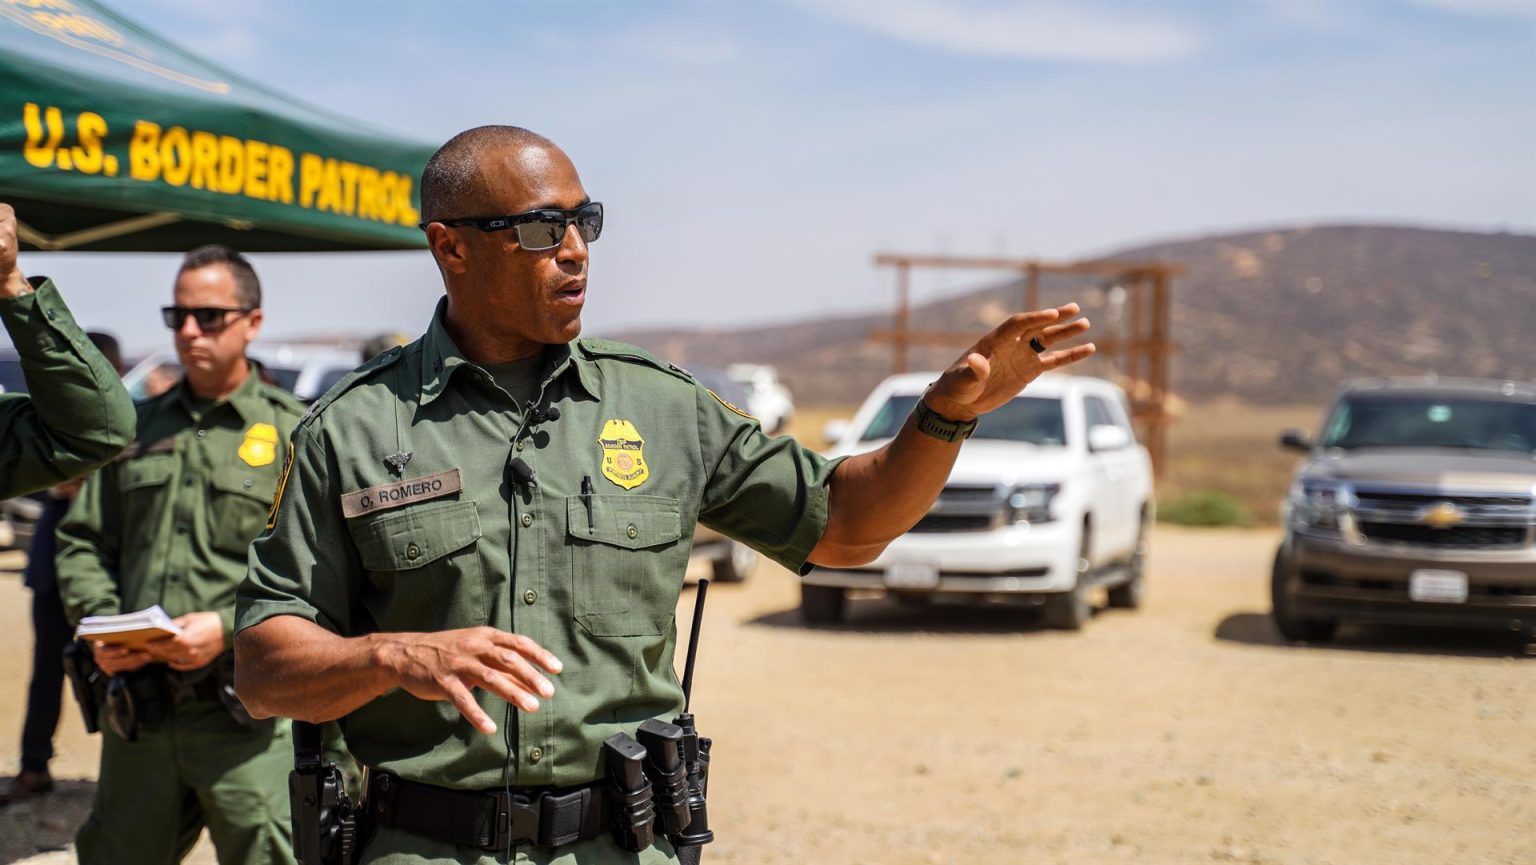 El comandante de la patrulla fronteriza encargado de enlace con autoridades mexicanas, Orlando Romero, habla durante una conferencia de prensa, hoy, en la frontera mexico-estadounidense, en San Diego, California (EE.UU.). EFE/ Manuel Ocaño